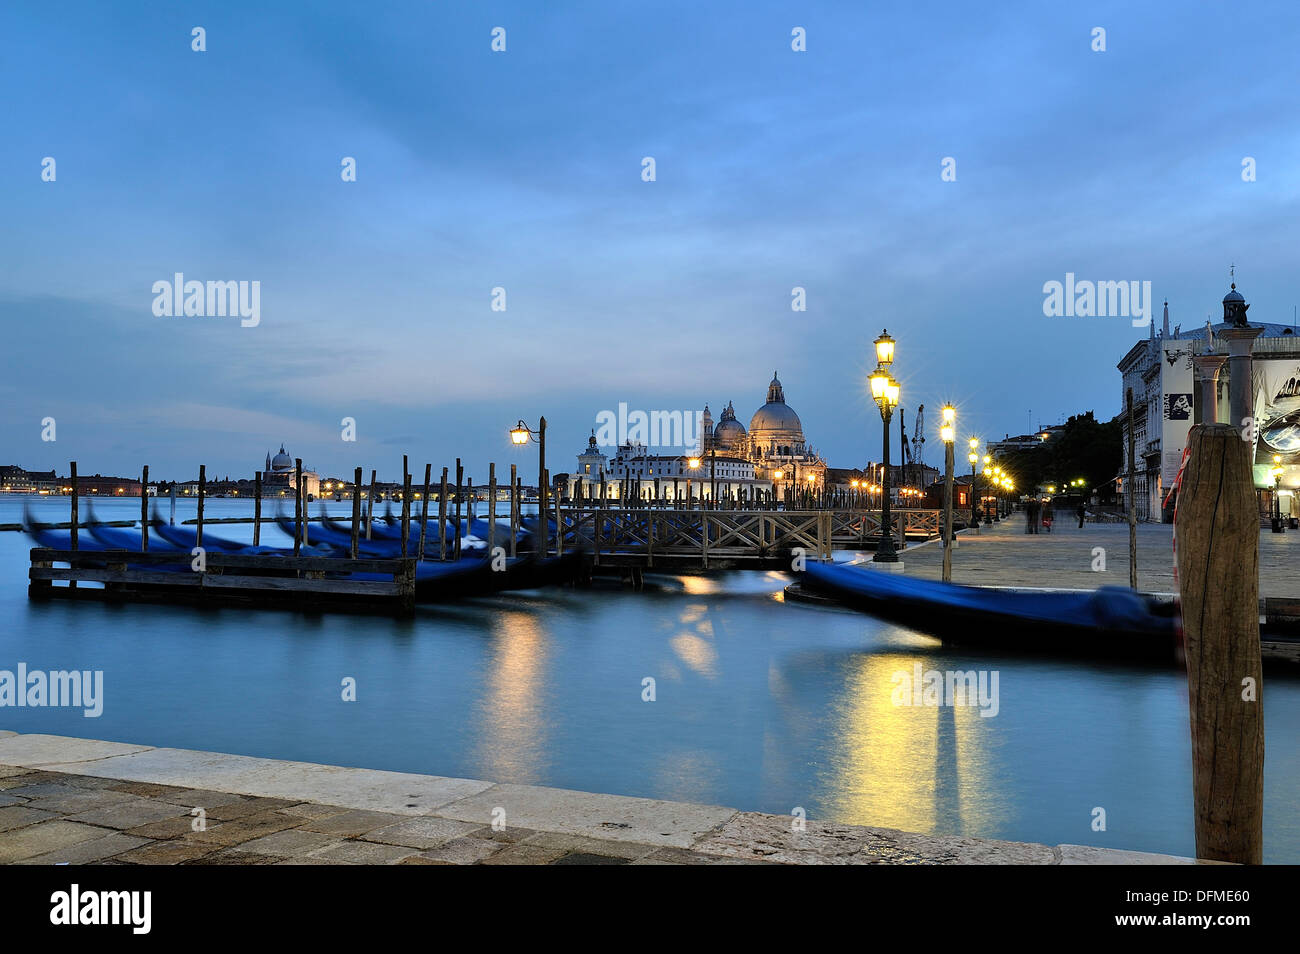 Bella immagine catturata durante le ore di colore blu a Venezia, il primo piano possiamo vedere le tipiche gondole veneziane ormeggiata presso il molo, Foto Stock